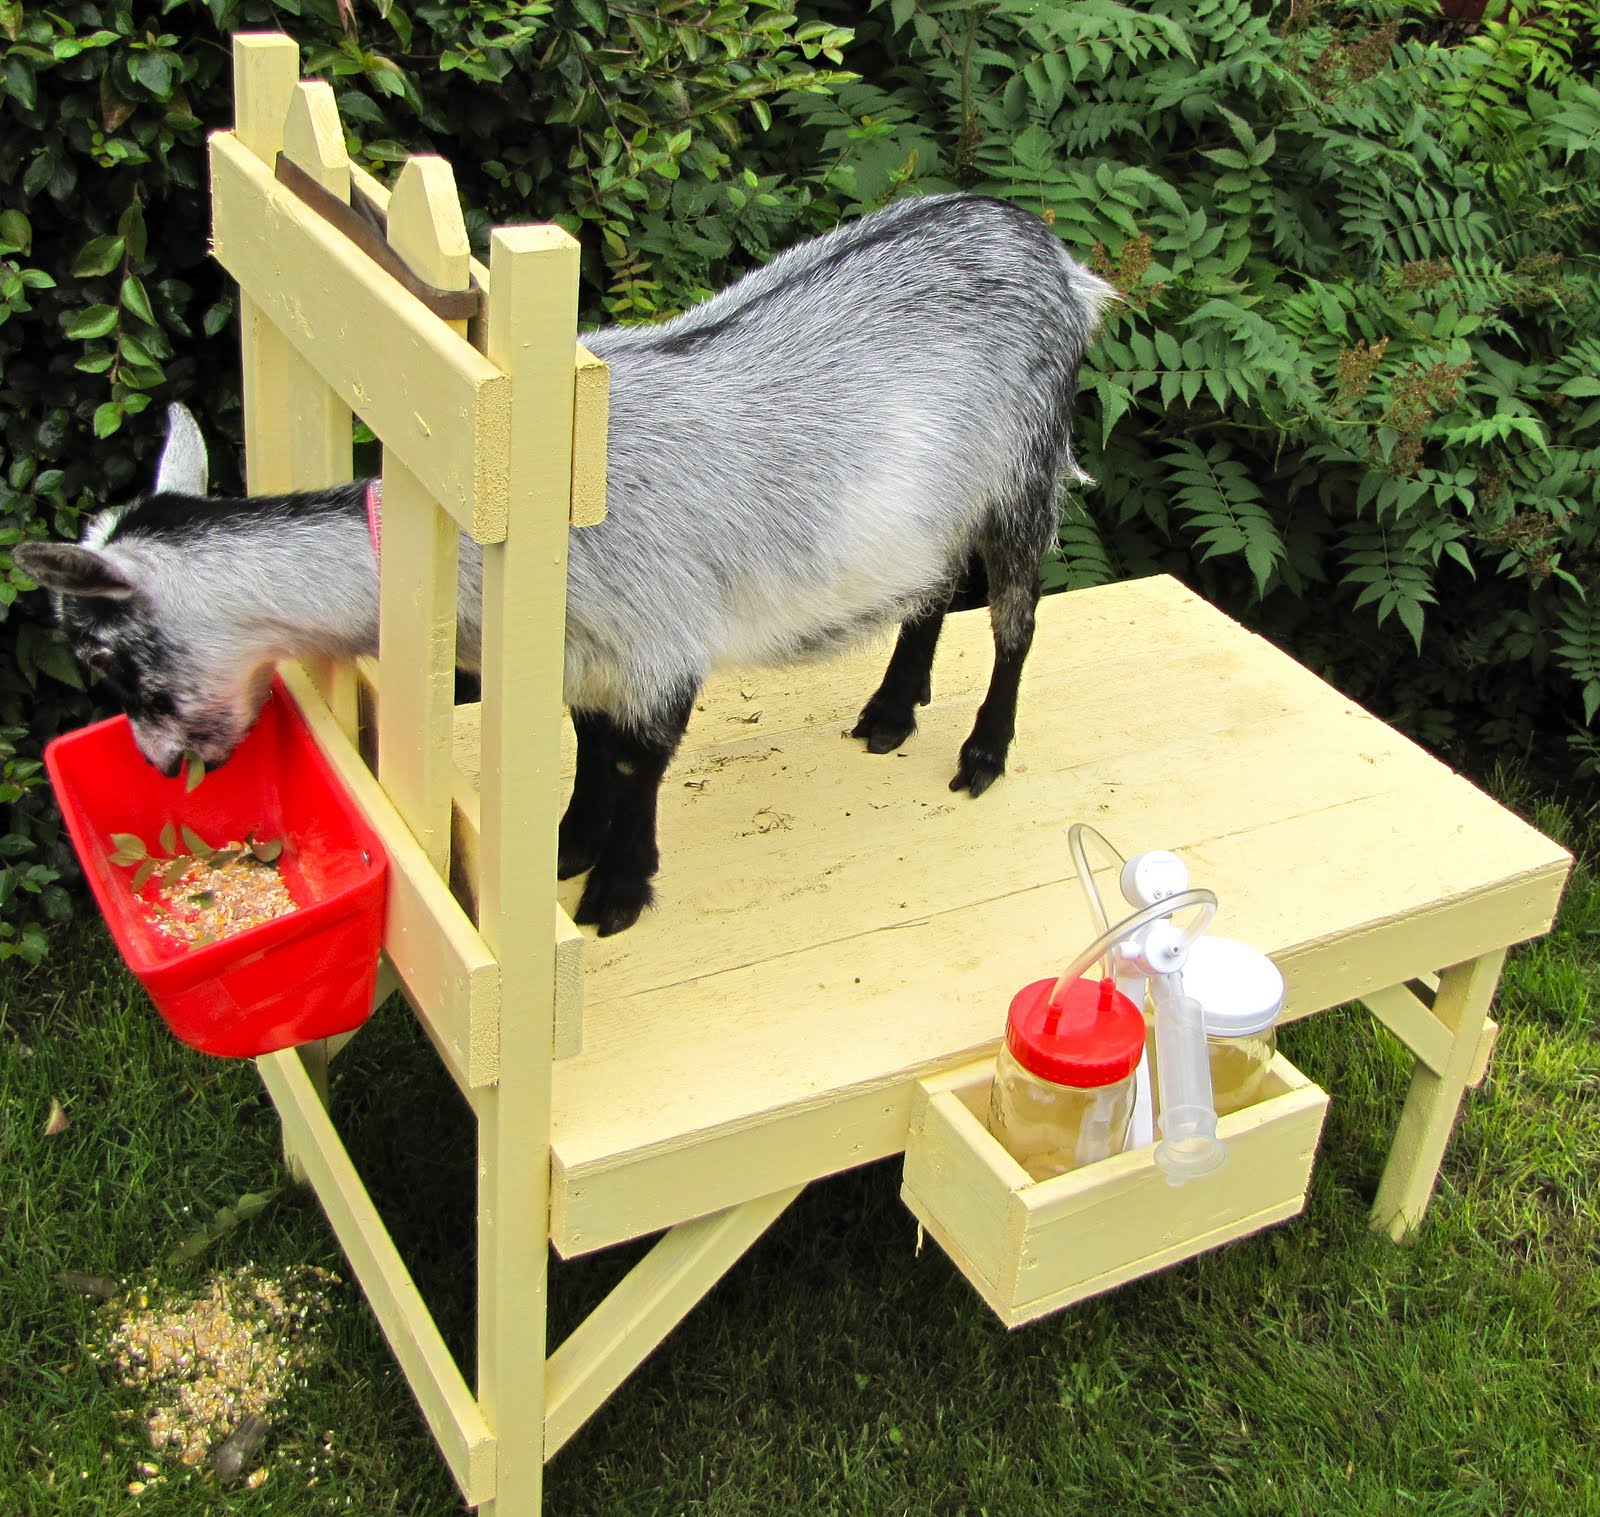 Кормушка для козы своими руками фото | Домик для коз, Курятник, Чертежи